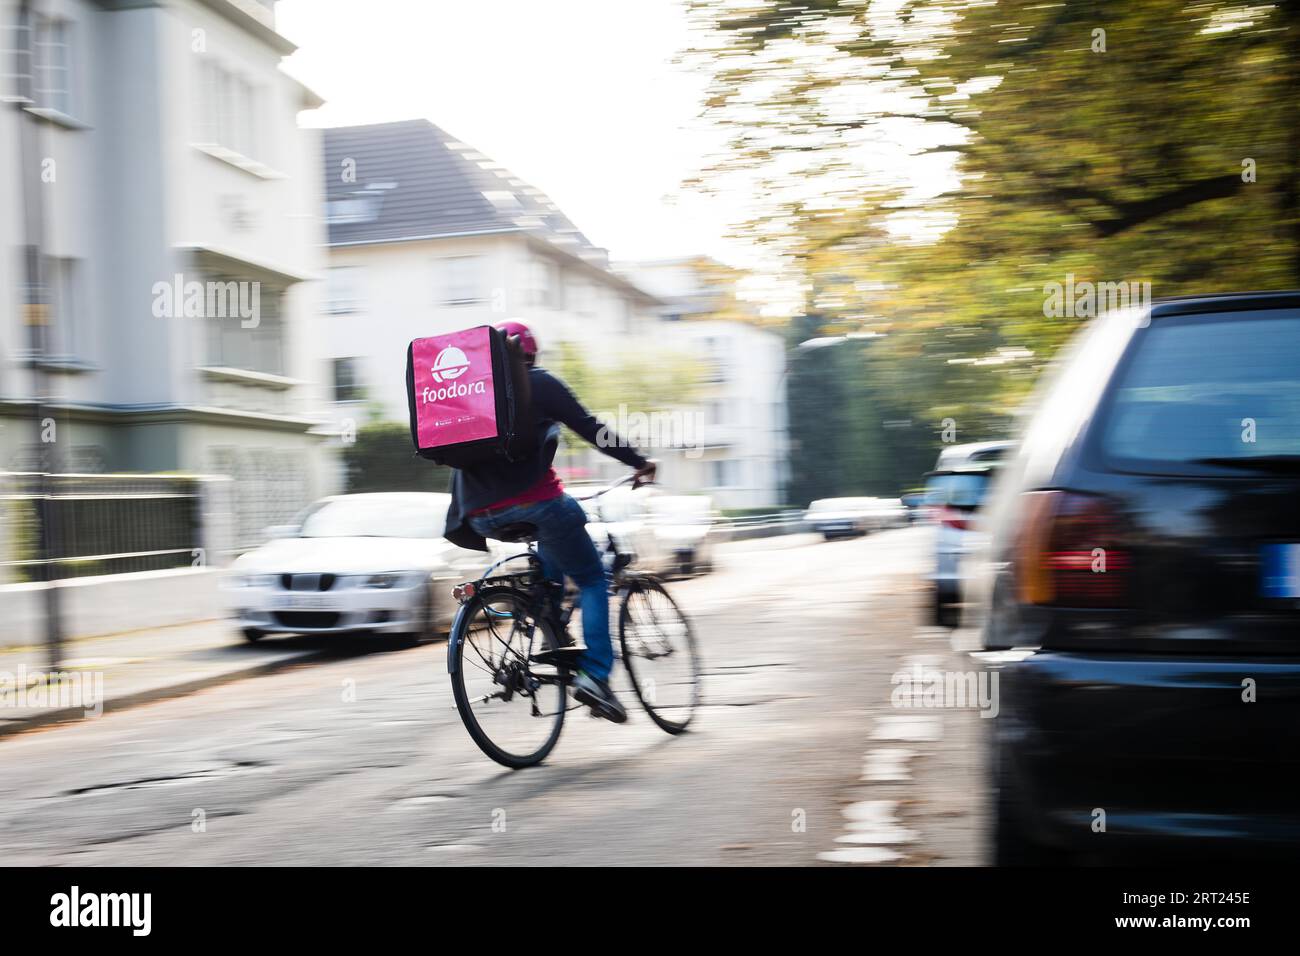 Entrega de alimentos por un conductor de mensajería en una bicicleta, Colonia, Alemania Foto de stock